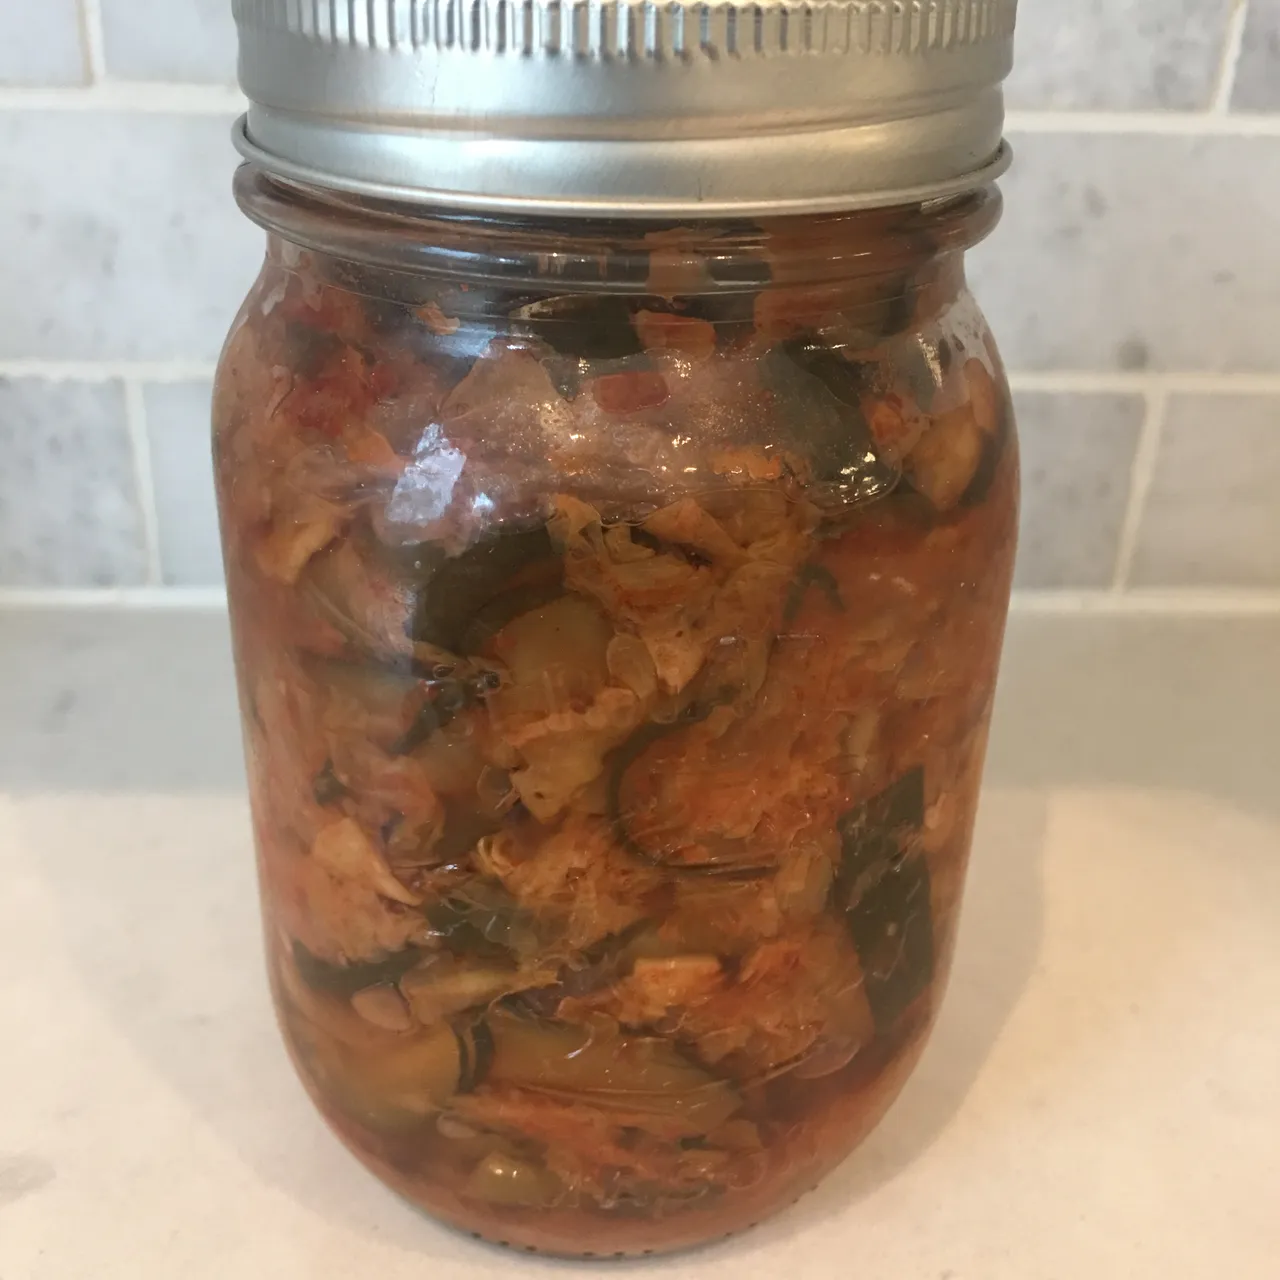 Unopened Homemade Kimchi photo 1